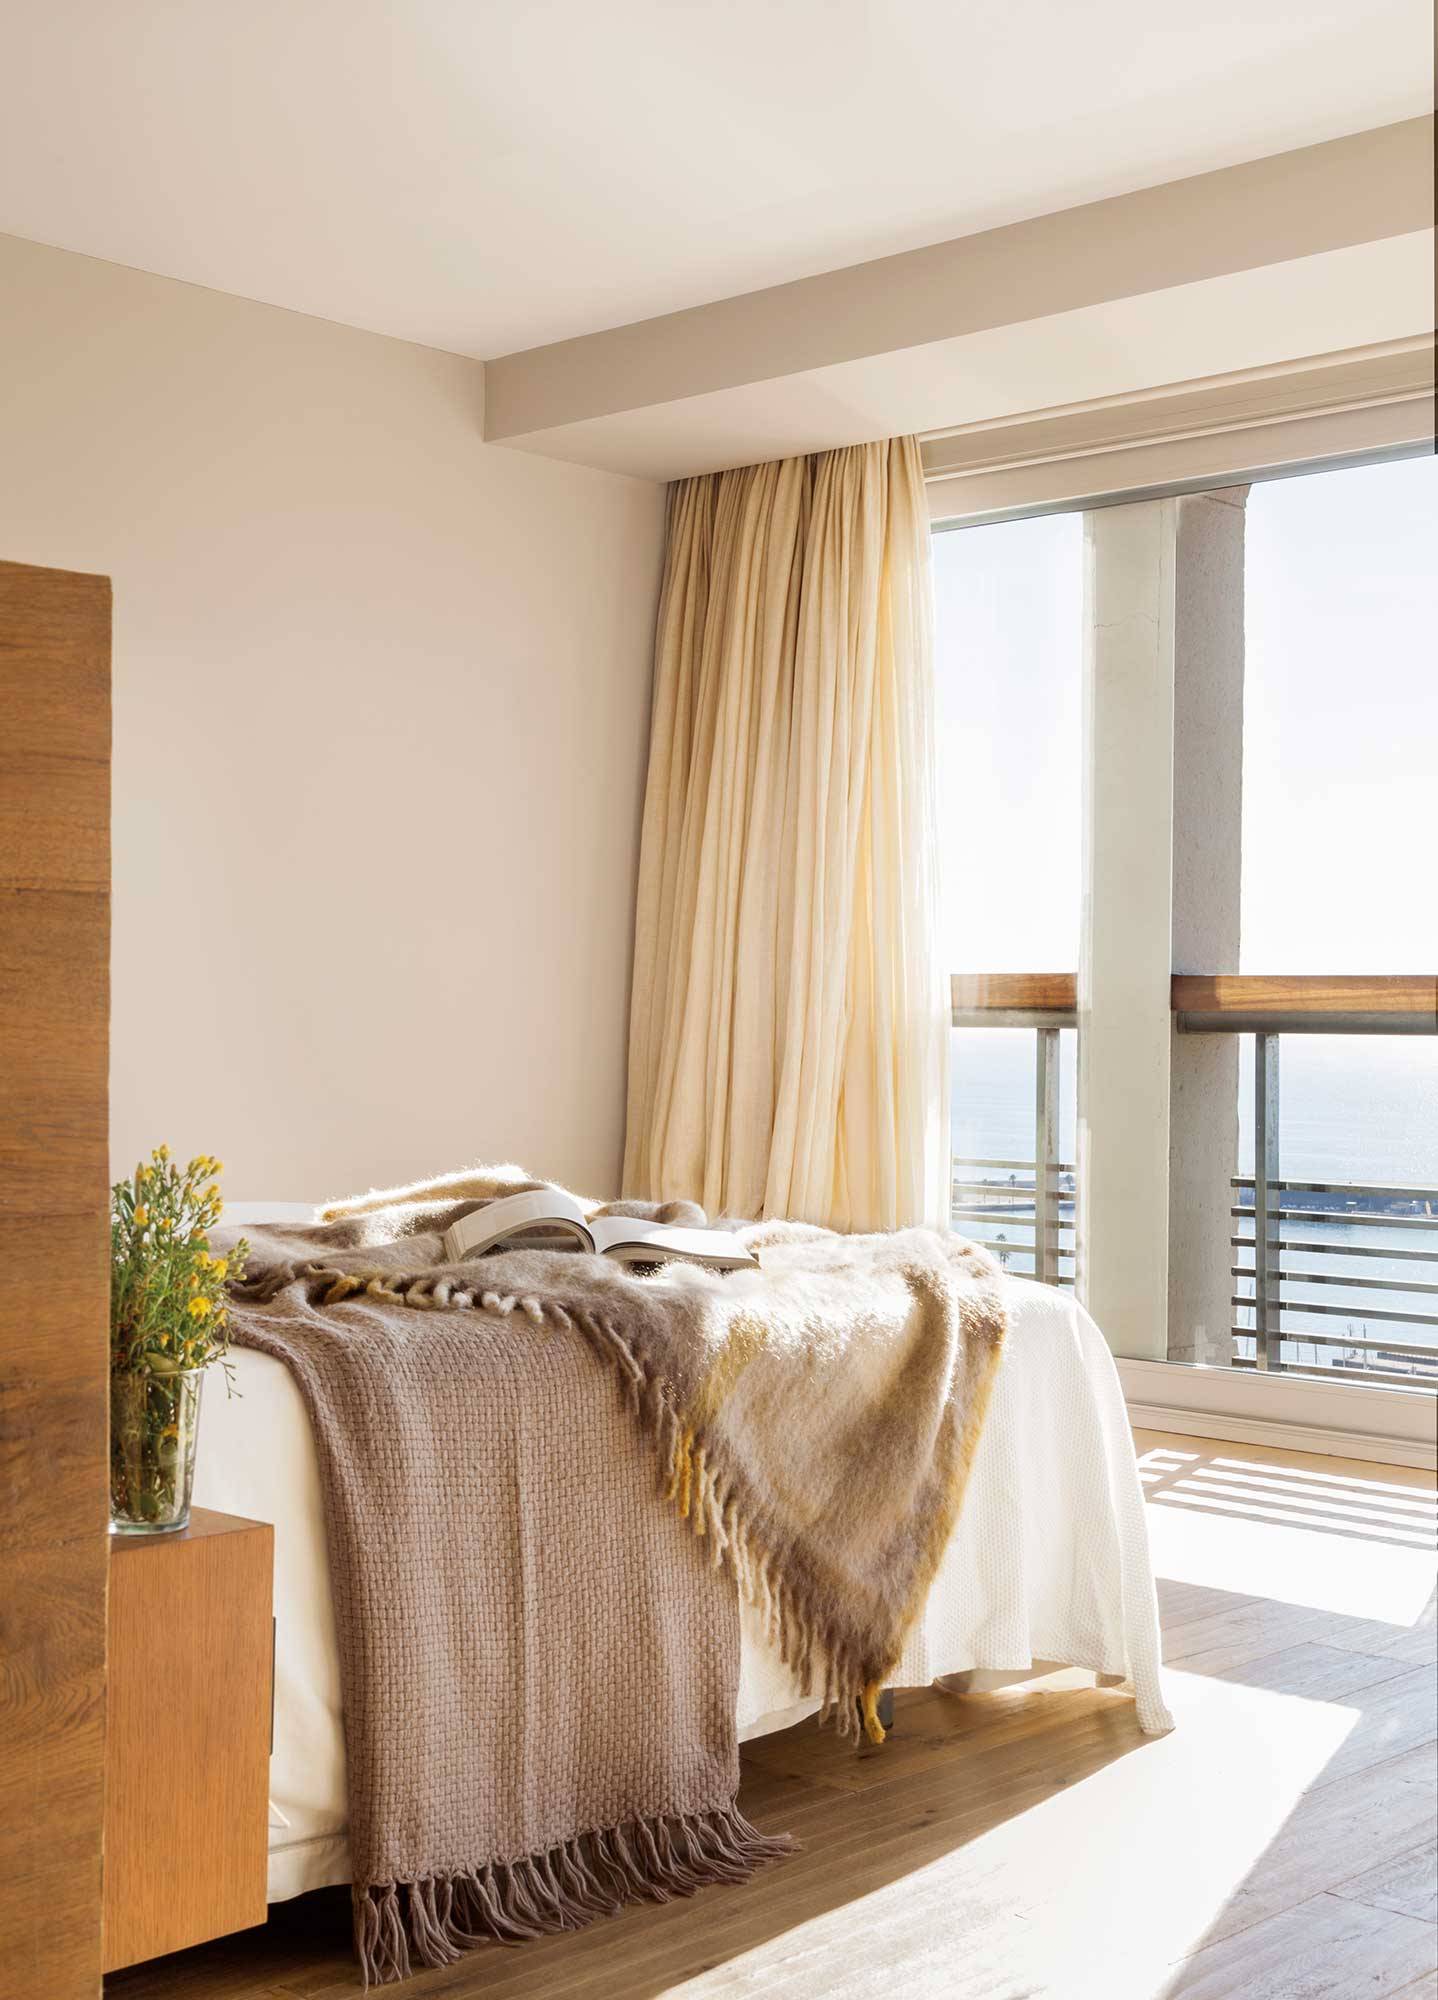 Dormitorio veraniego en color beige con cortinas hasta el techo.